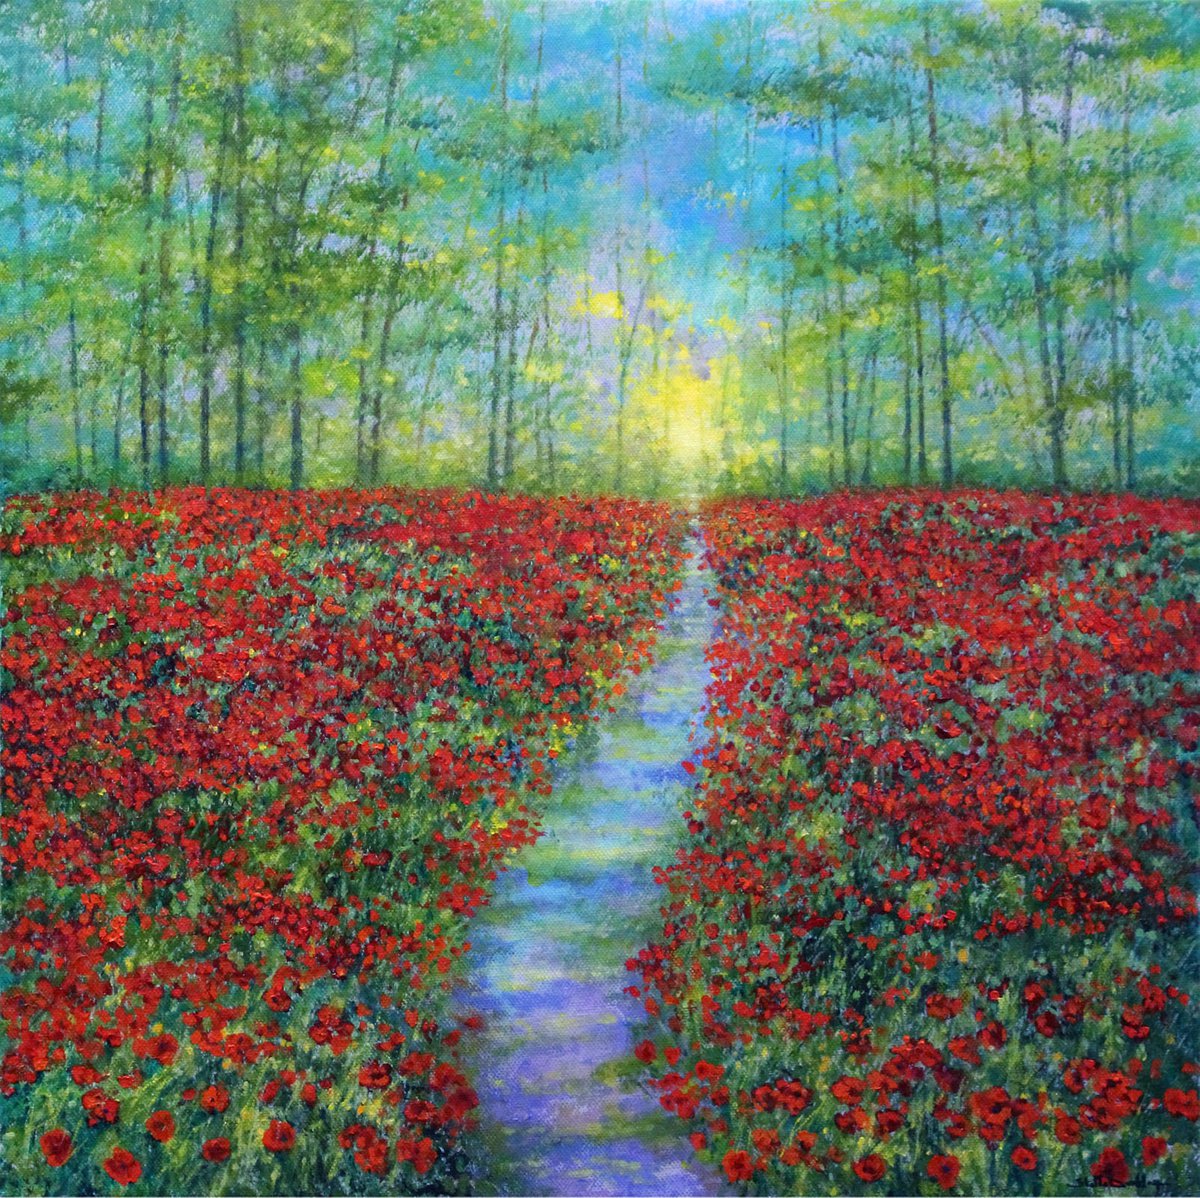 Field Of Poppies II by Stella Dunkley